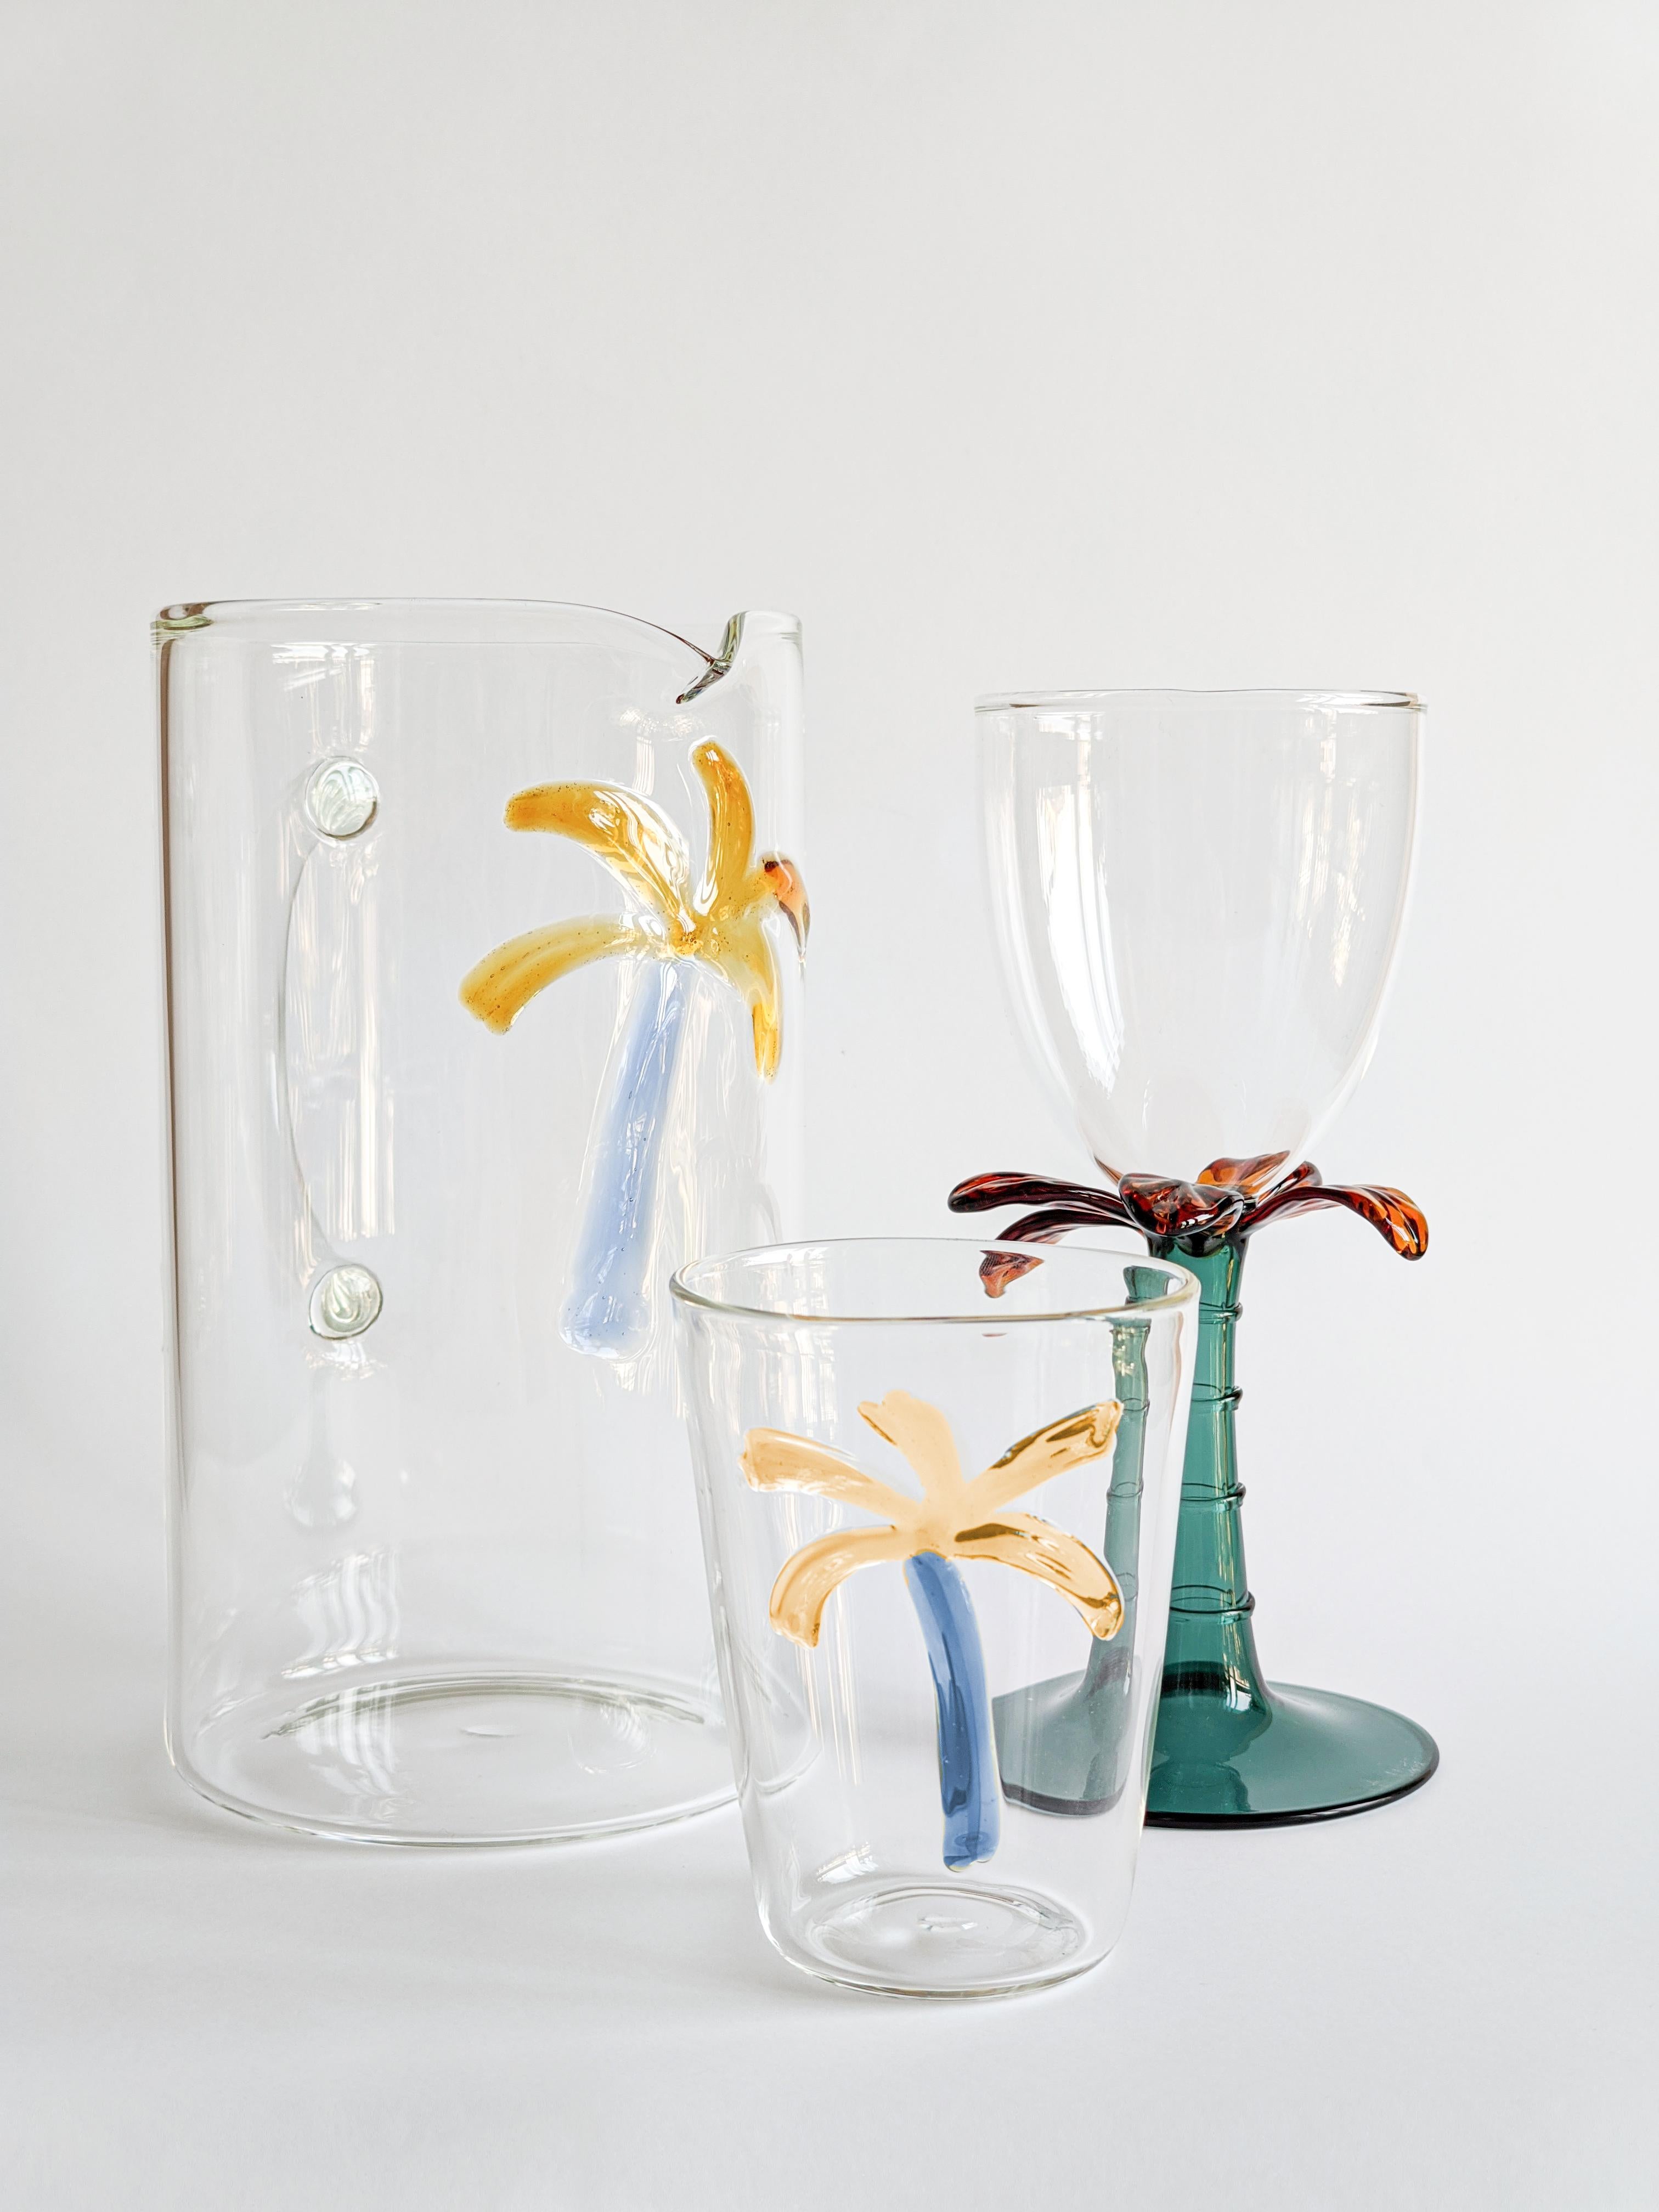 Las Palmas, Contemporary Blown Glass Pitcher with Decorative Details For Sale 2